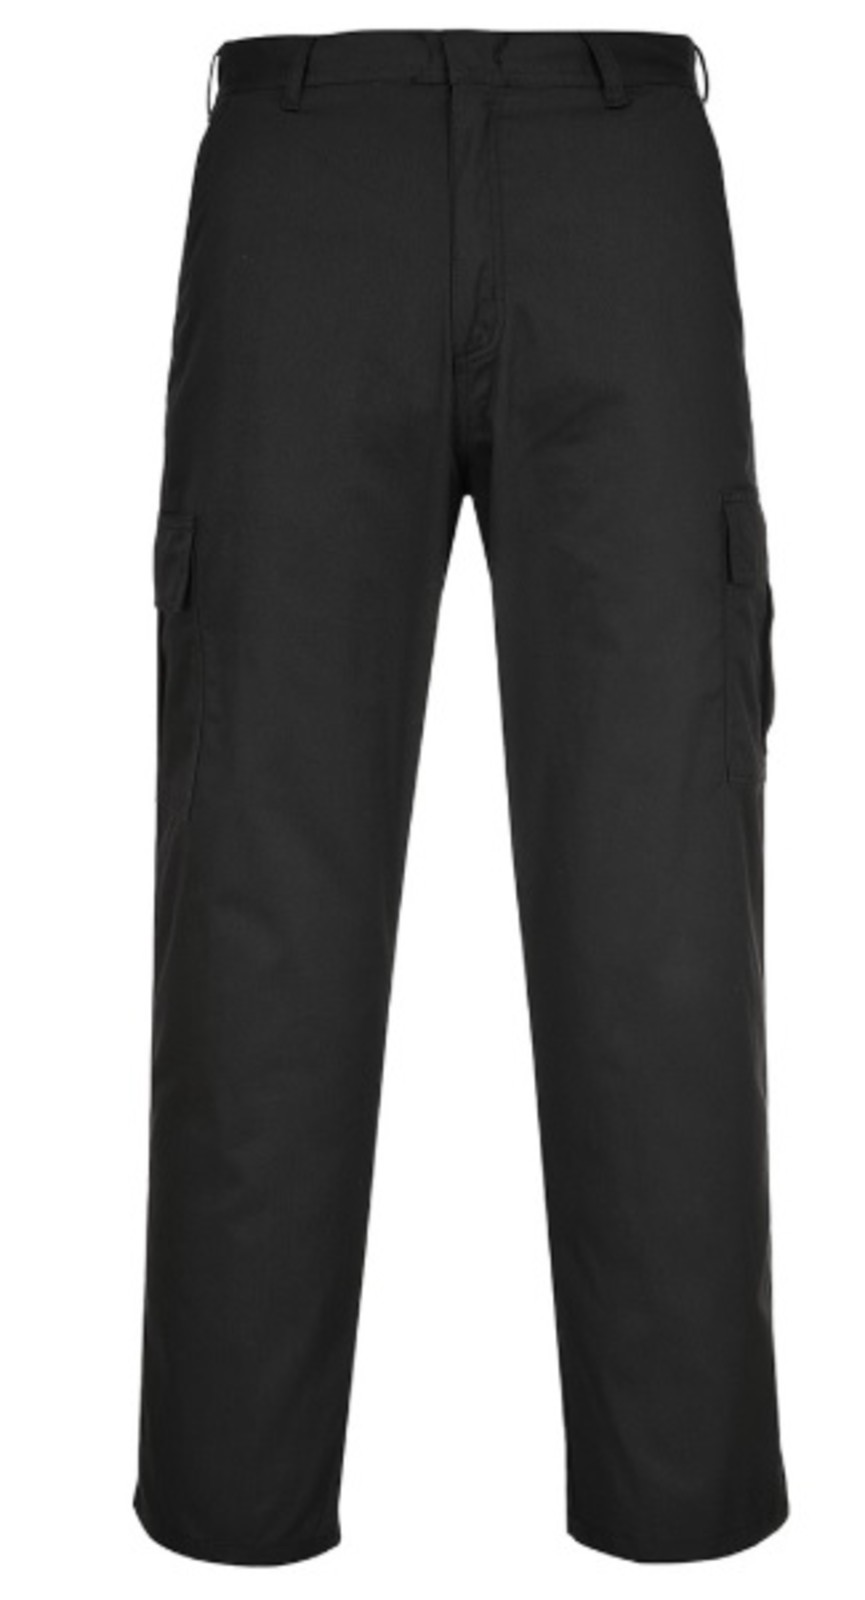 Pracovné nohavice Portwest Combat C701 - veľkosť: 58, farba: čierna